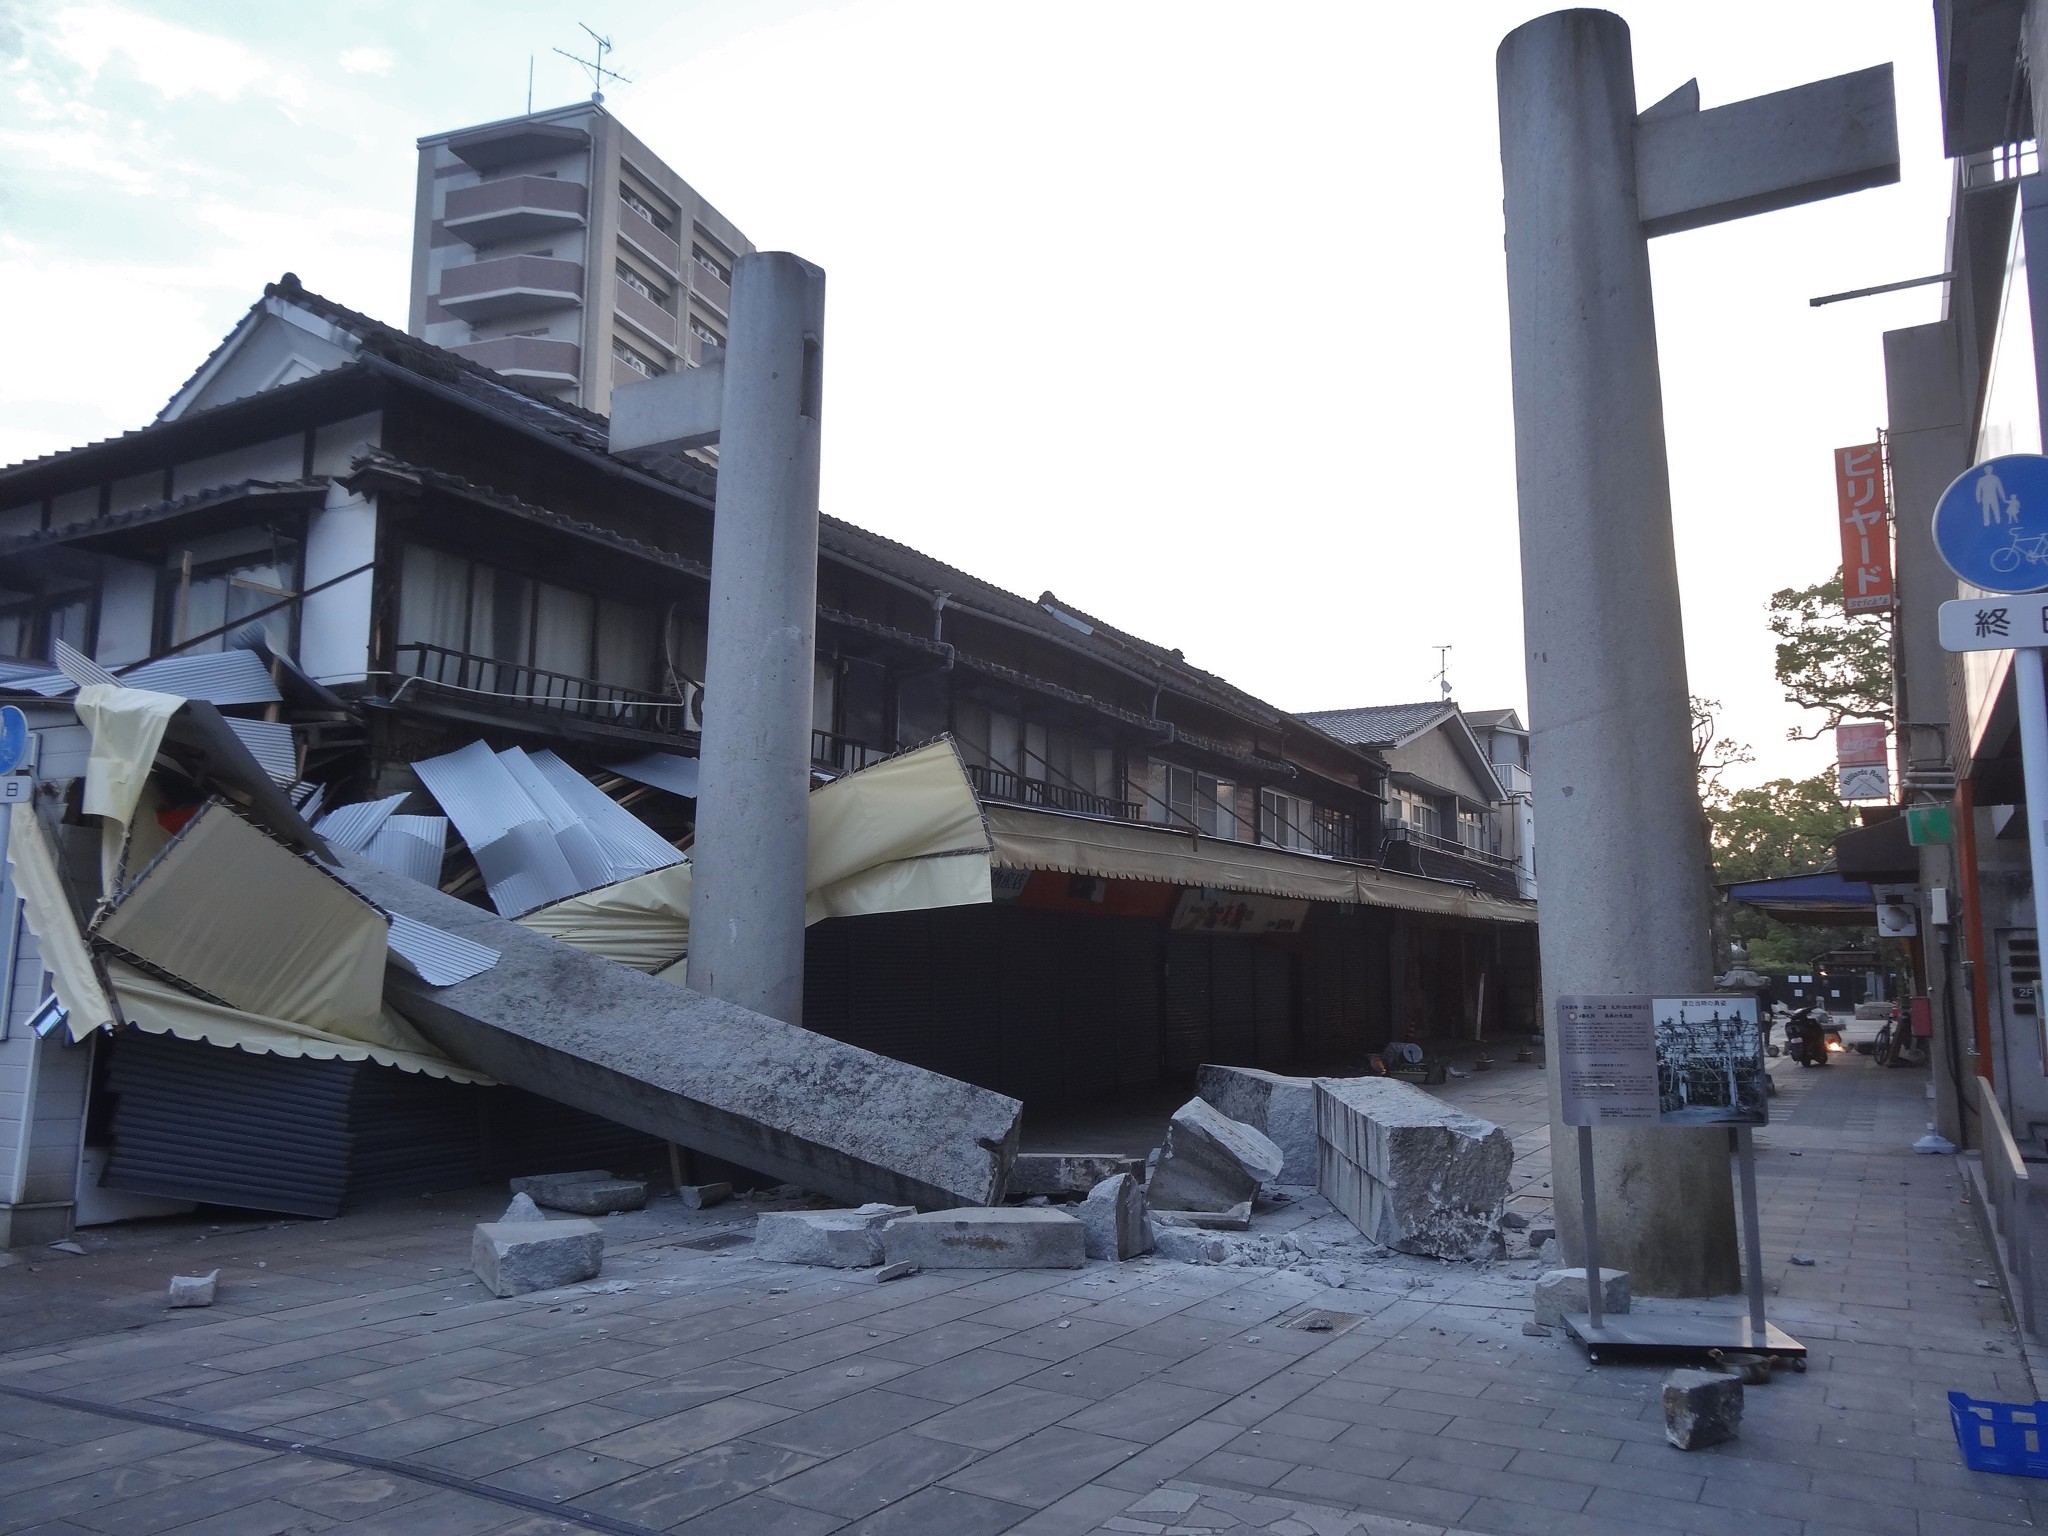 水前寺公園 水前寺成趣園の長寿の大鳥居が熊本地震によって倒壊